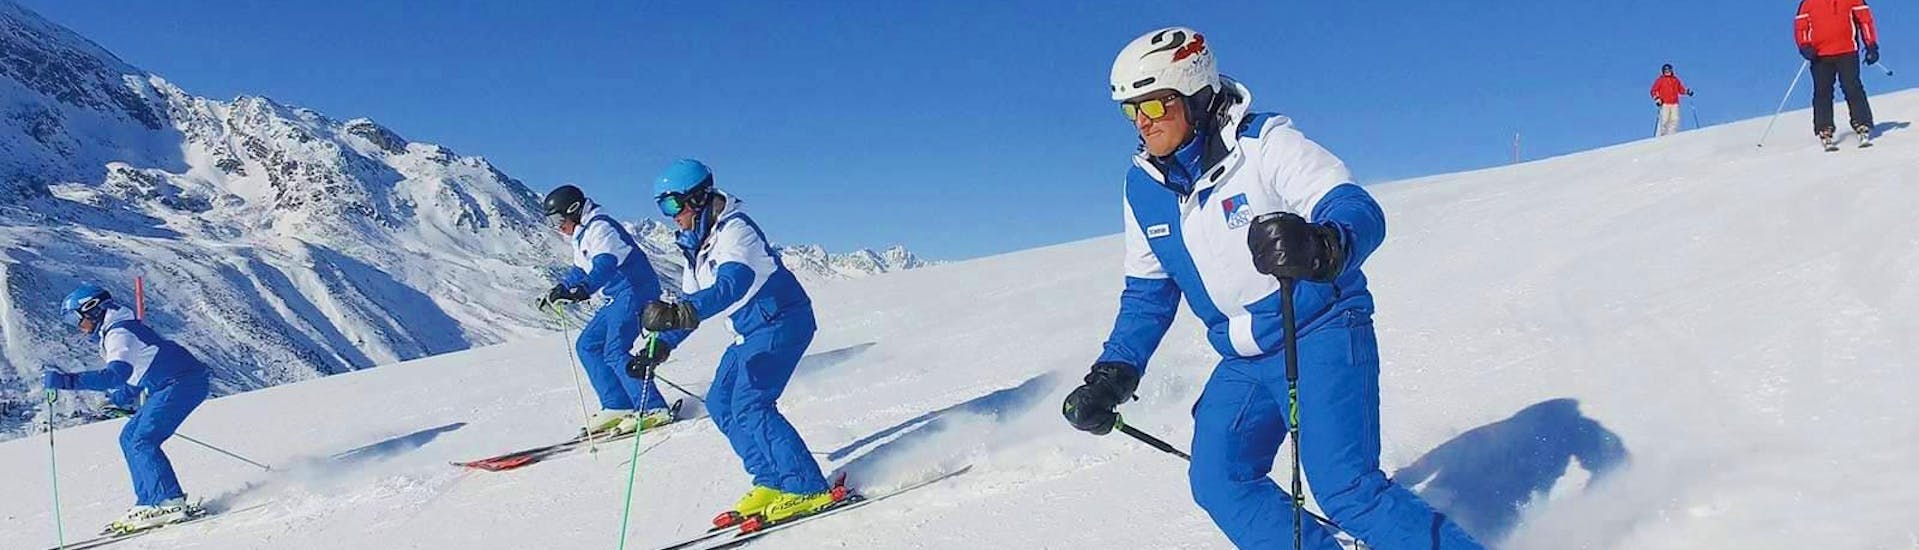 Skilessen voor volwassenen vanaf 5 jaar - ervaren.